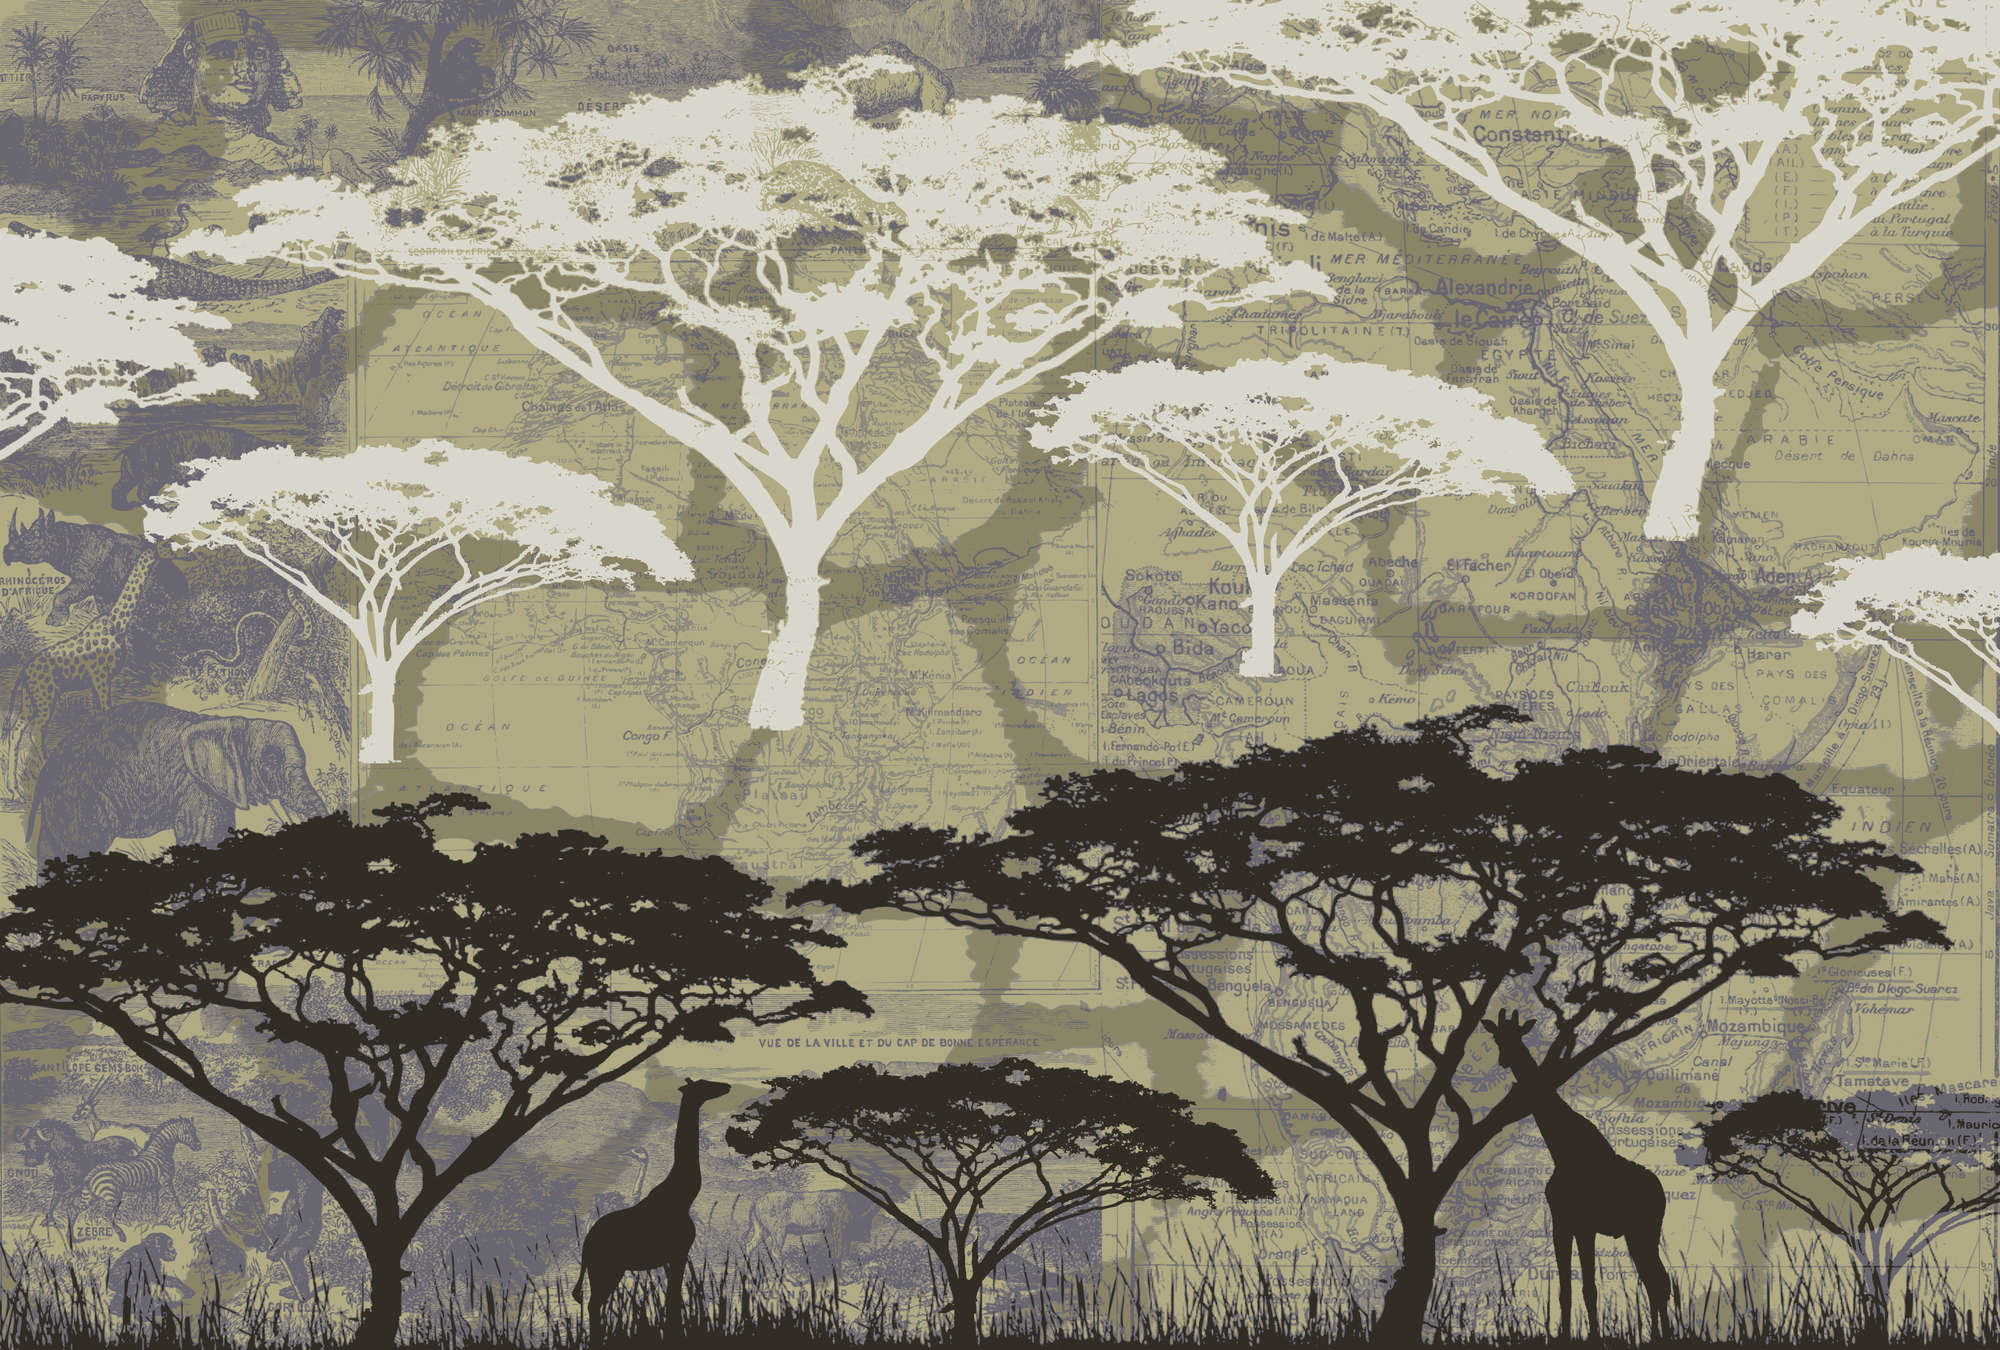             Savane - papier peint avec motif d'arbre dans le style africain
        